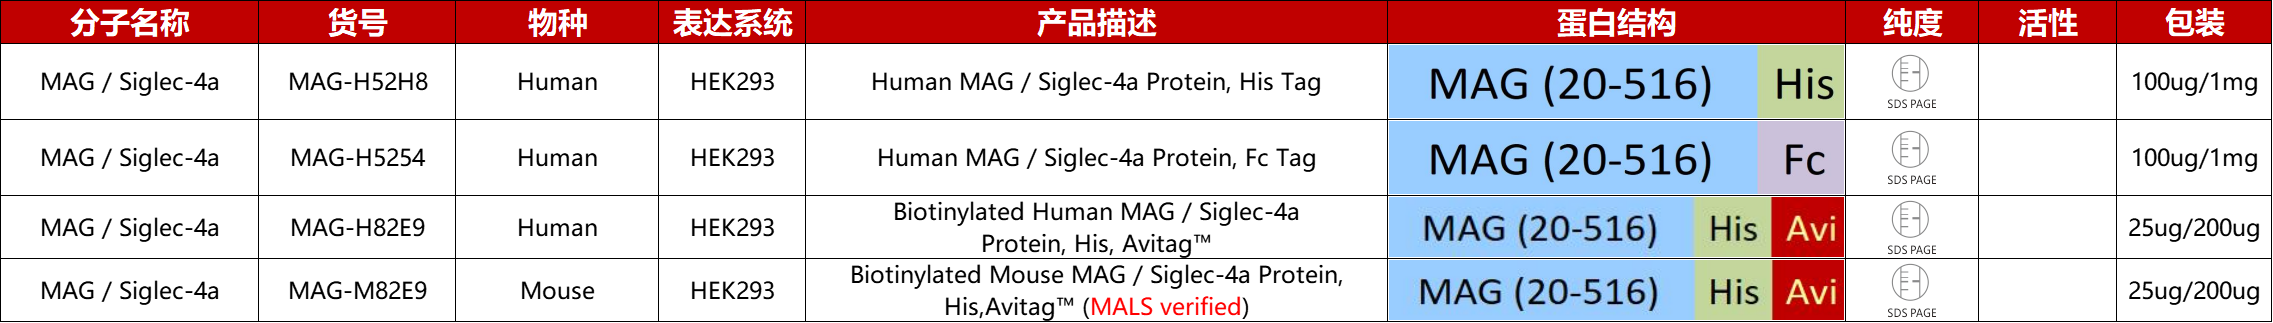 MAG / Siglec-4A重组蛋白